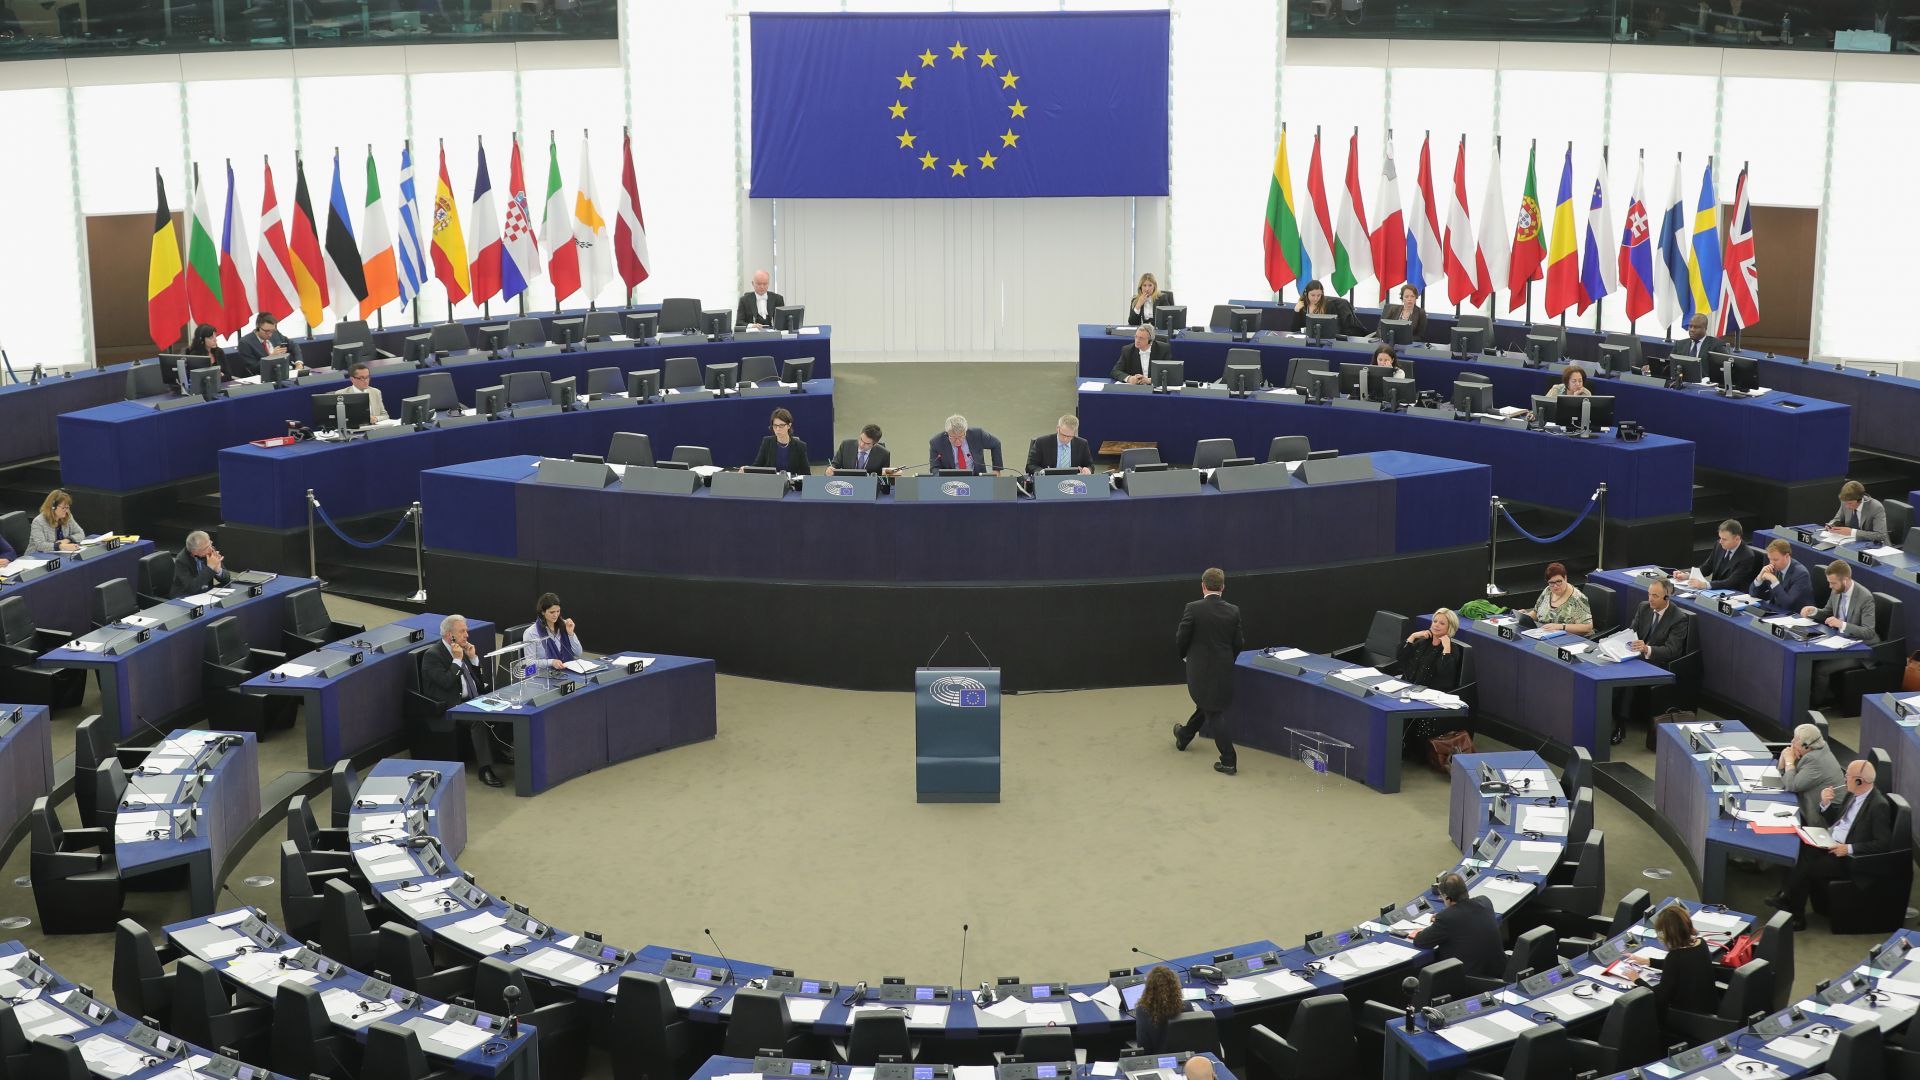 Български евродепутати не гласуваха и вкараха пакета "Мобилност" в ЕП, министърът бесен